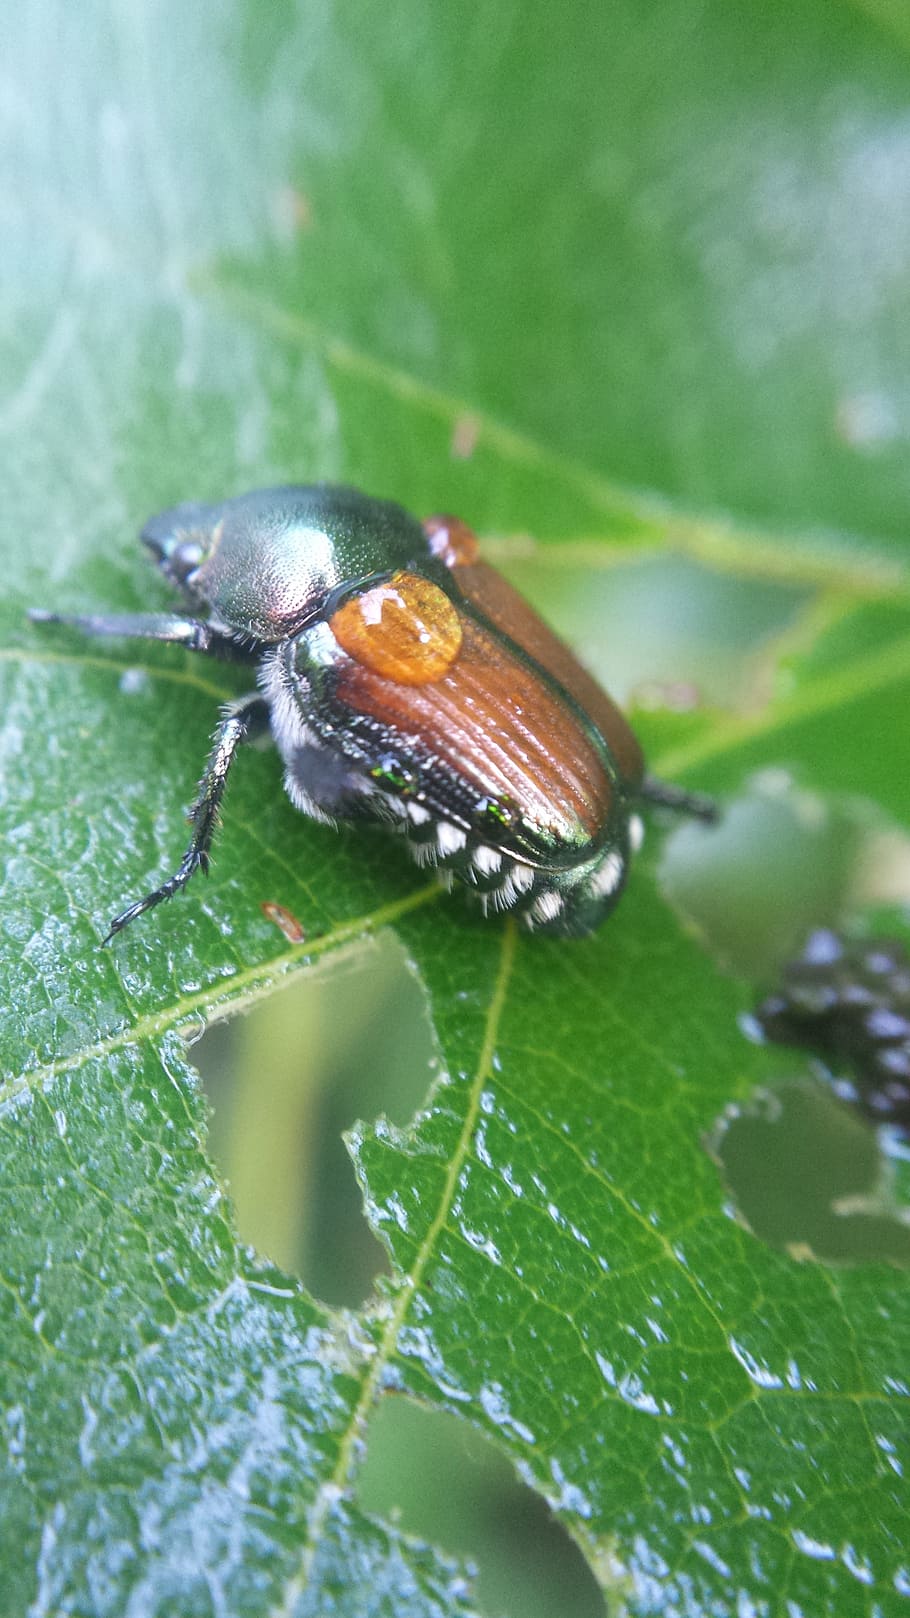 kumbang pada selentingan., kumbang, embun, selentingan, serangga, kutu, basah, satwa liar hewan, tema hewan, hewan